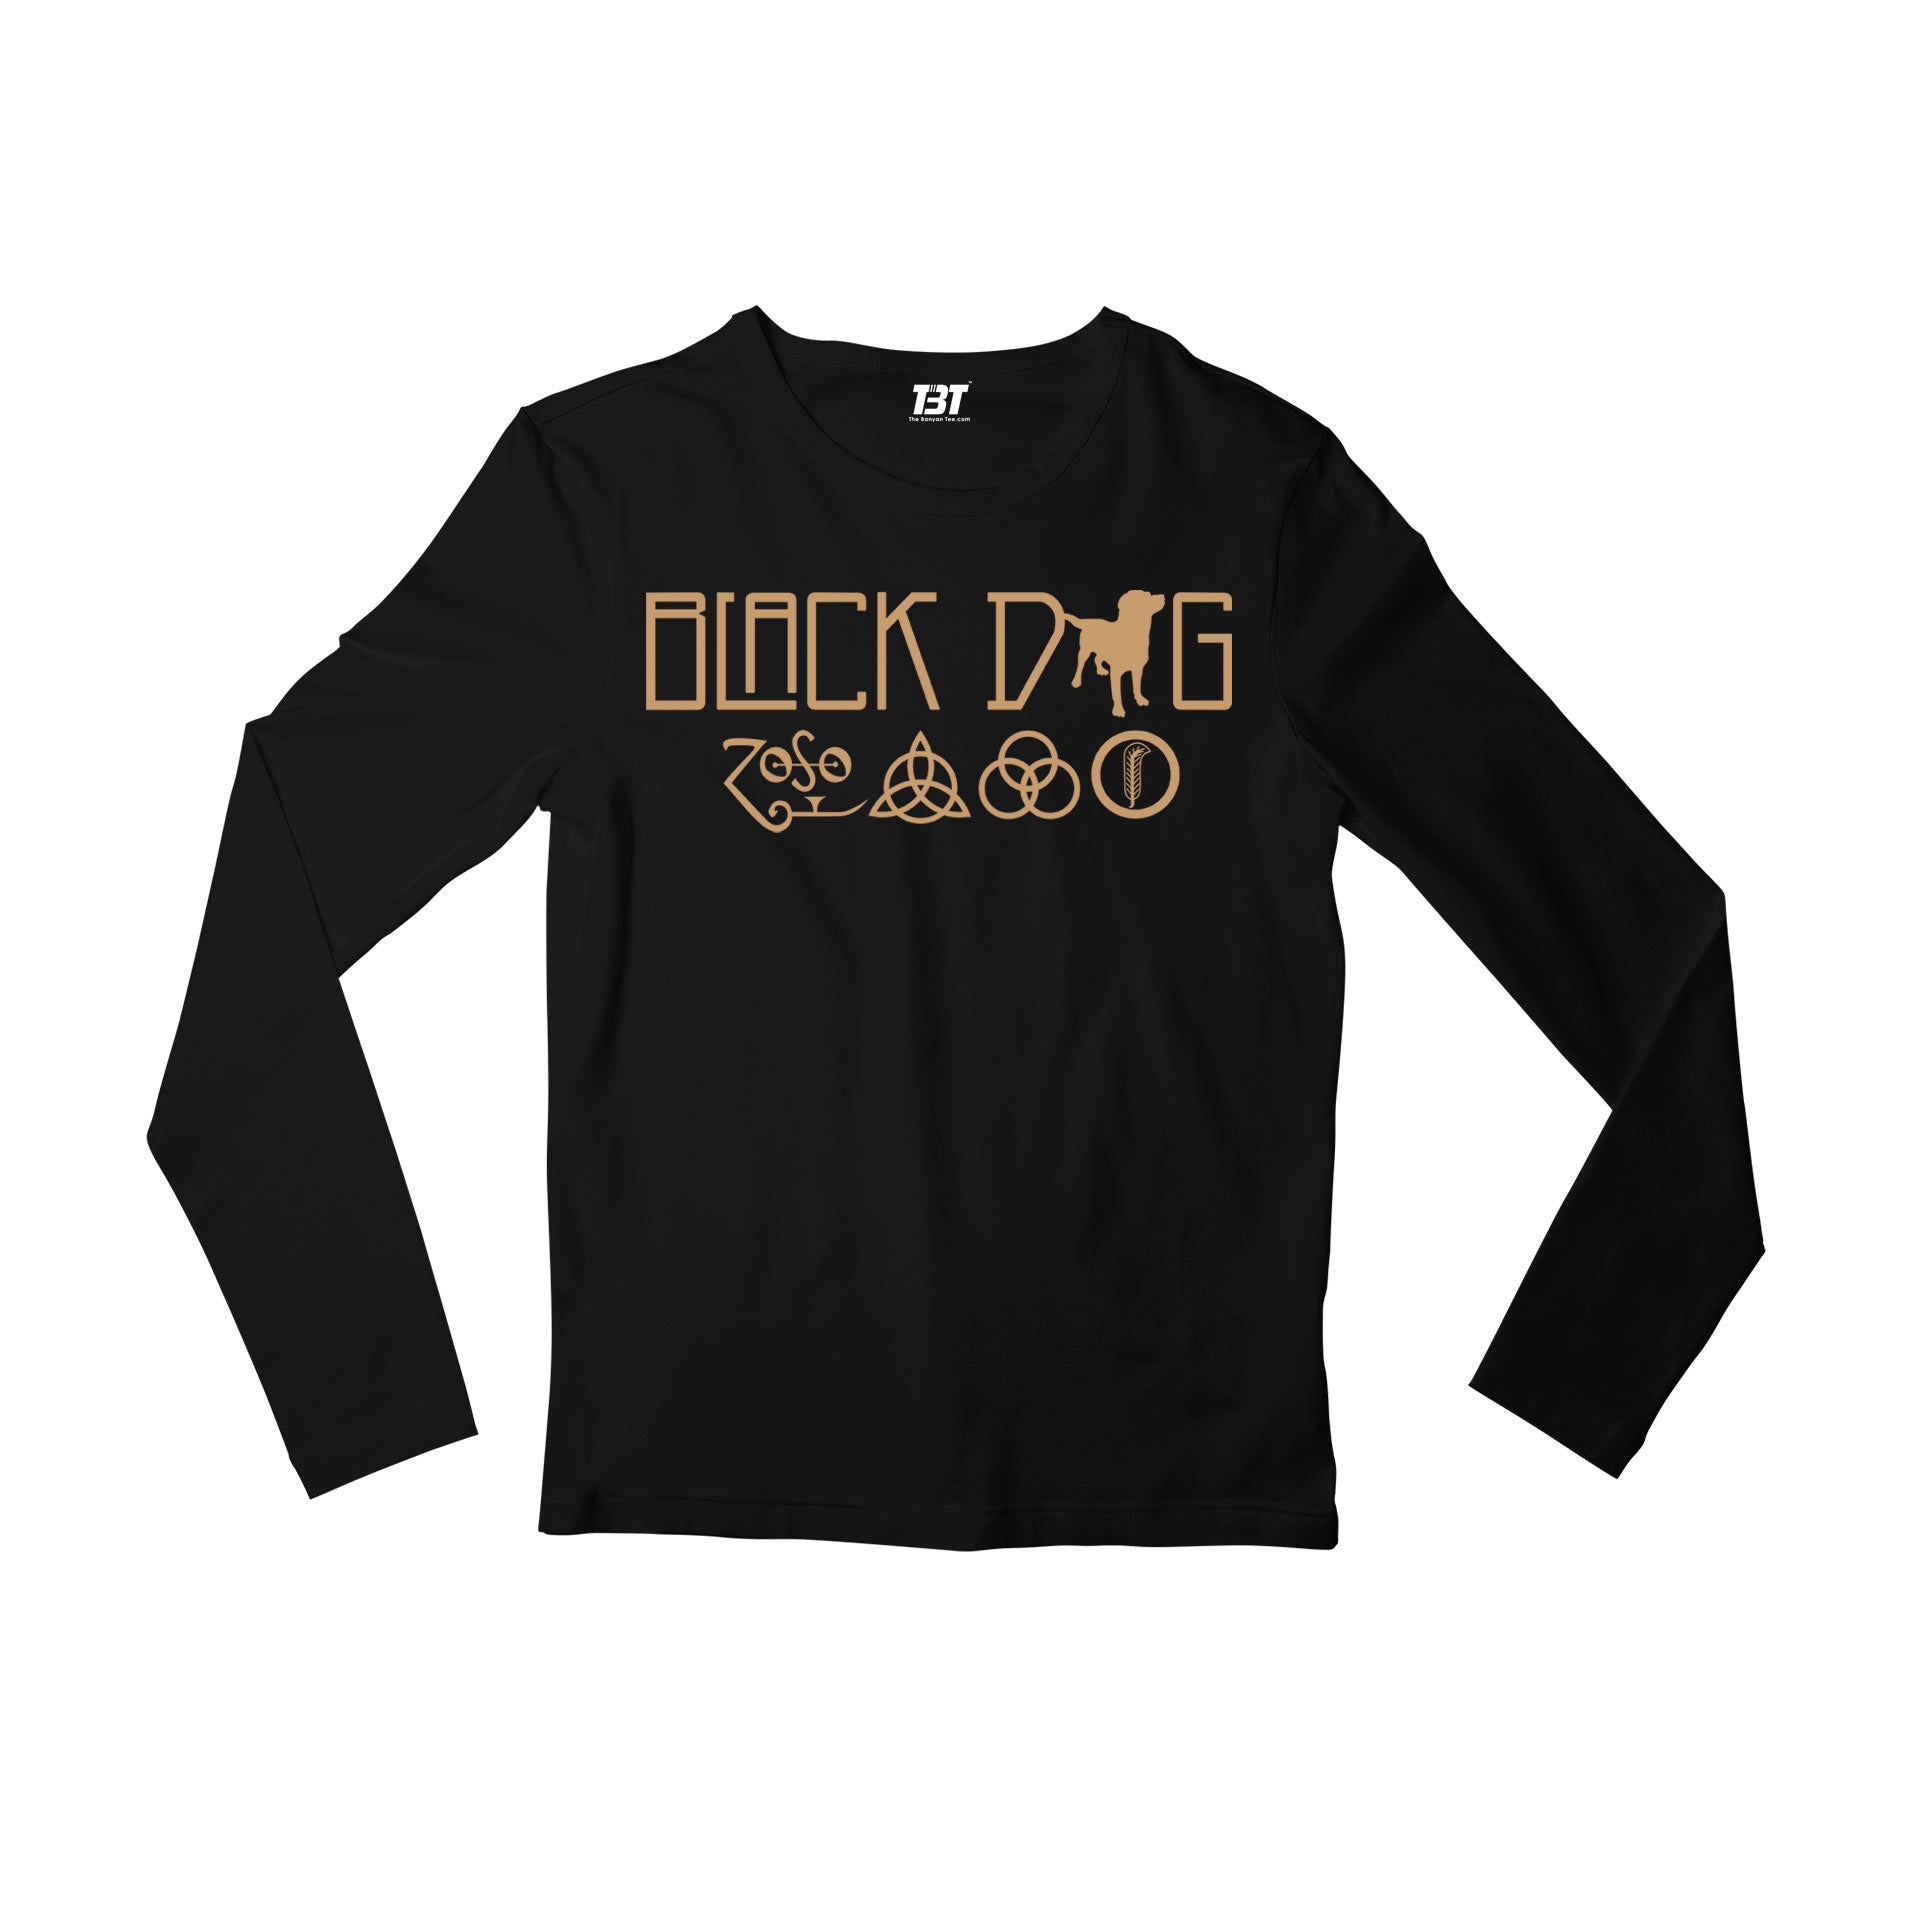 Led Zeppelin Full Sleeves T-shirt - Black Dog Full Sleeves T-shirt The Banyan Tee TBT